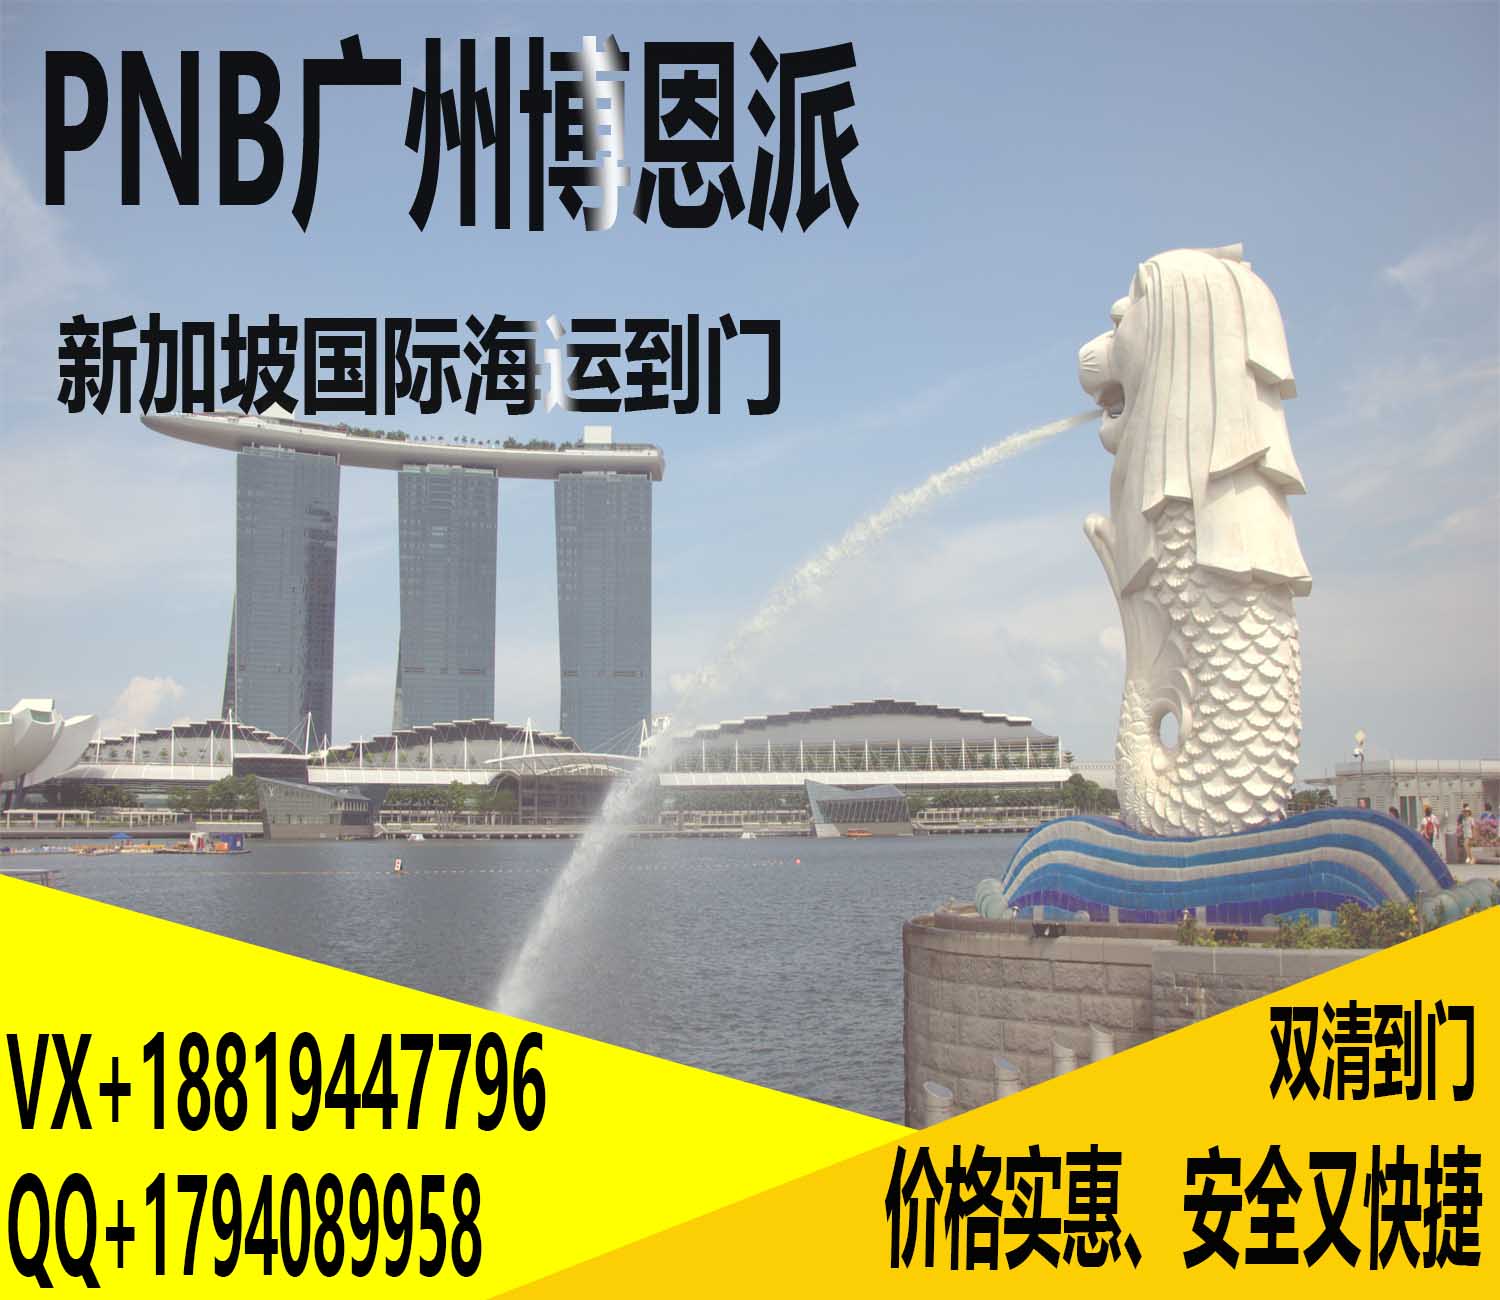 PNB博恩派-卫浴洗漱用具从中国海运到新加坡专线双清到门